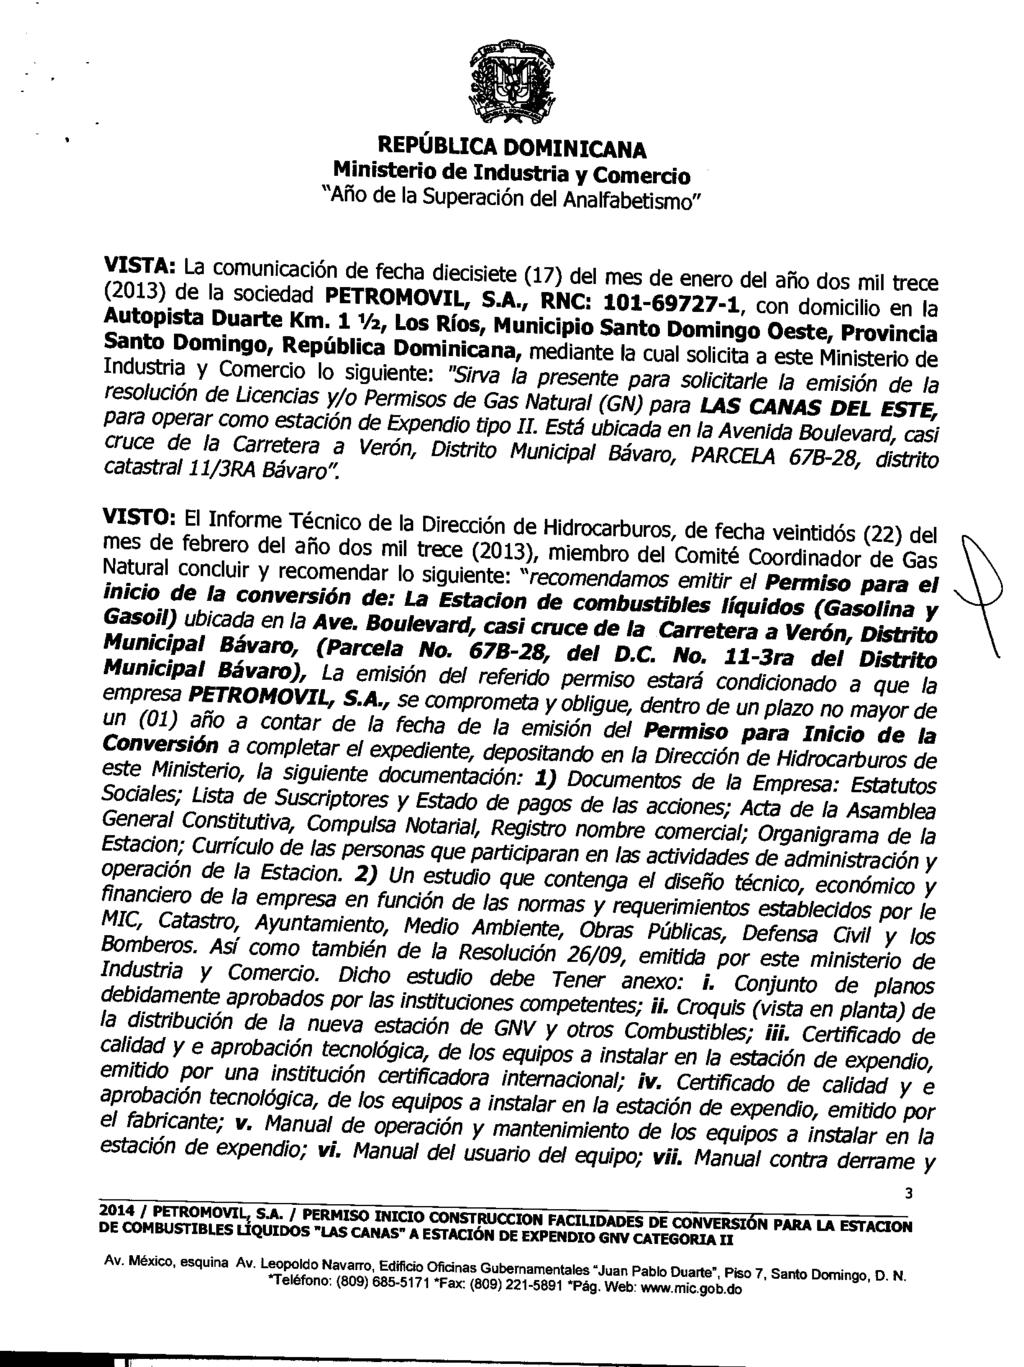 VISTA: La comunicación de fecha diecisiete (17) del mes de enero del año dos mil trece (2013) de la sociedad PETROMOVIL, RNC: 101-69727-1, Autopista Duarte Km.